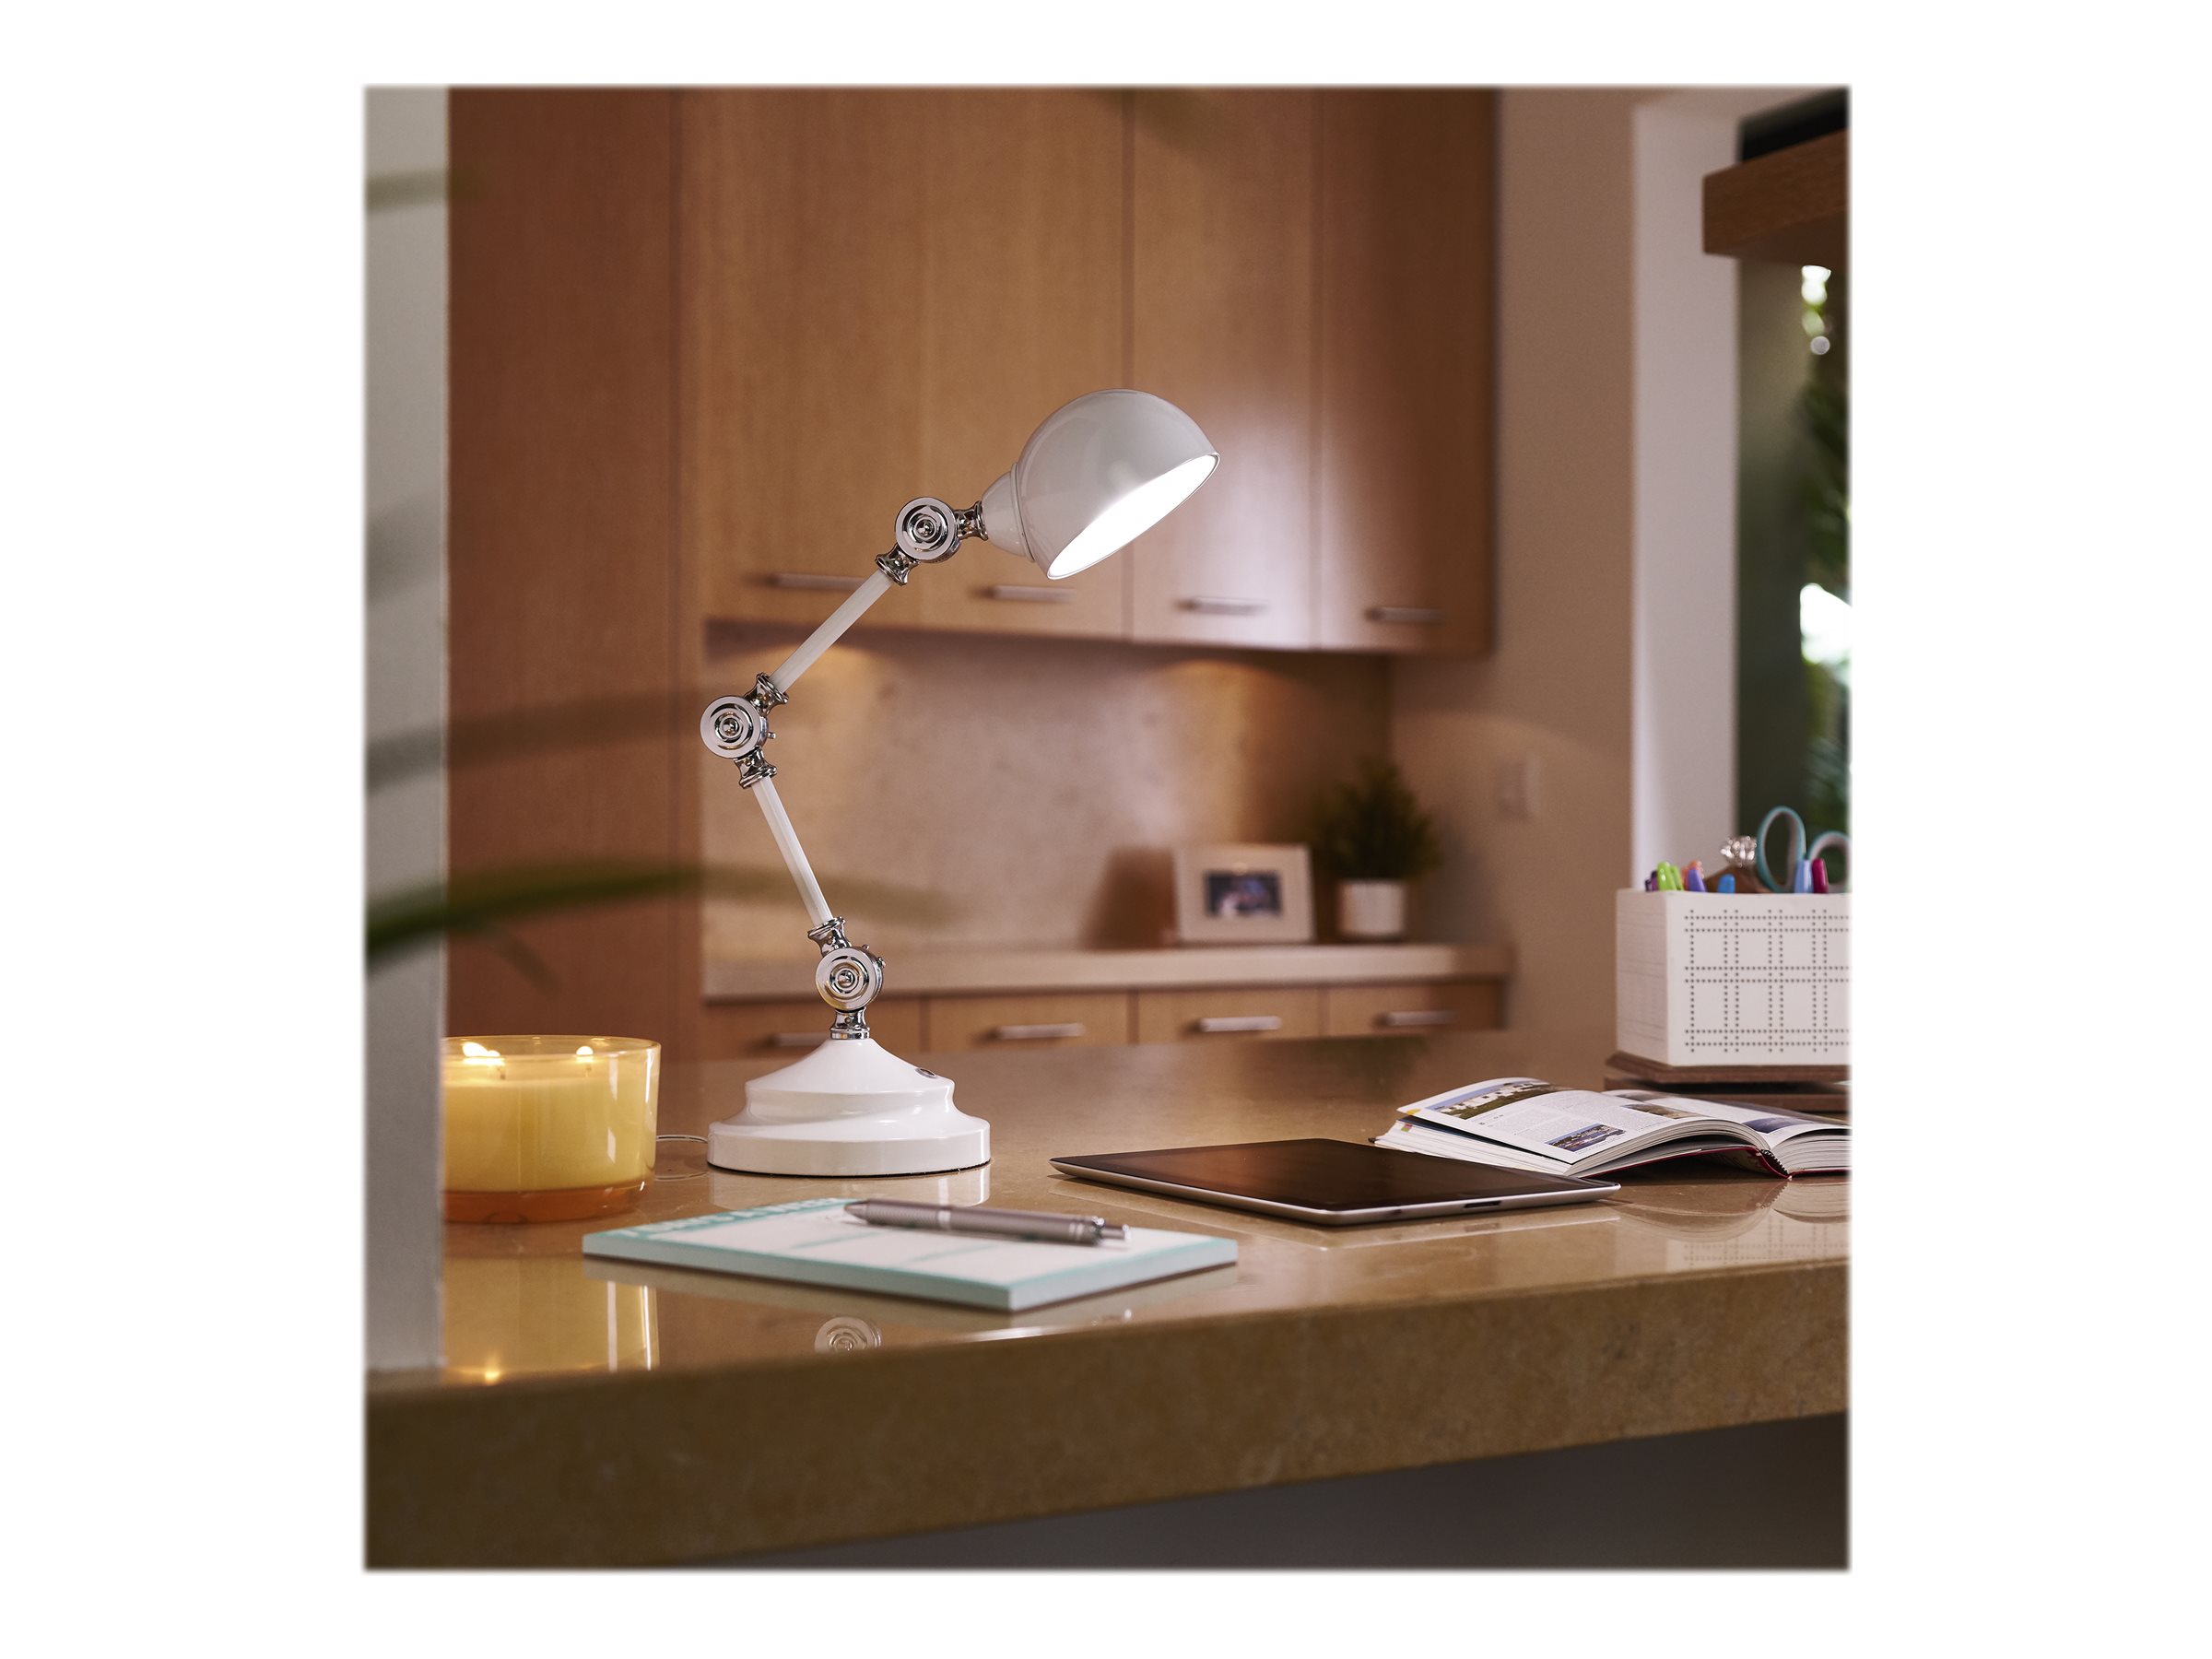 OttLite Revive LED Table Lamp - White - F1485009-CA